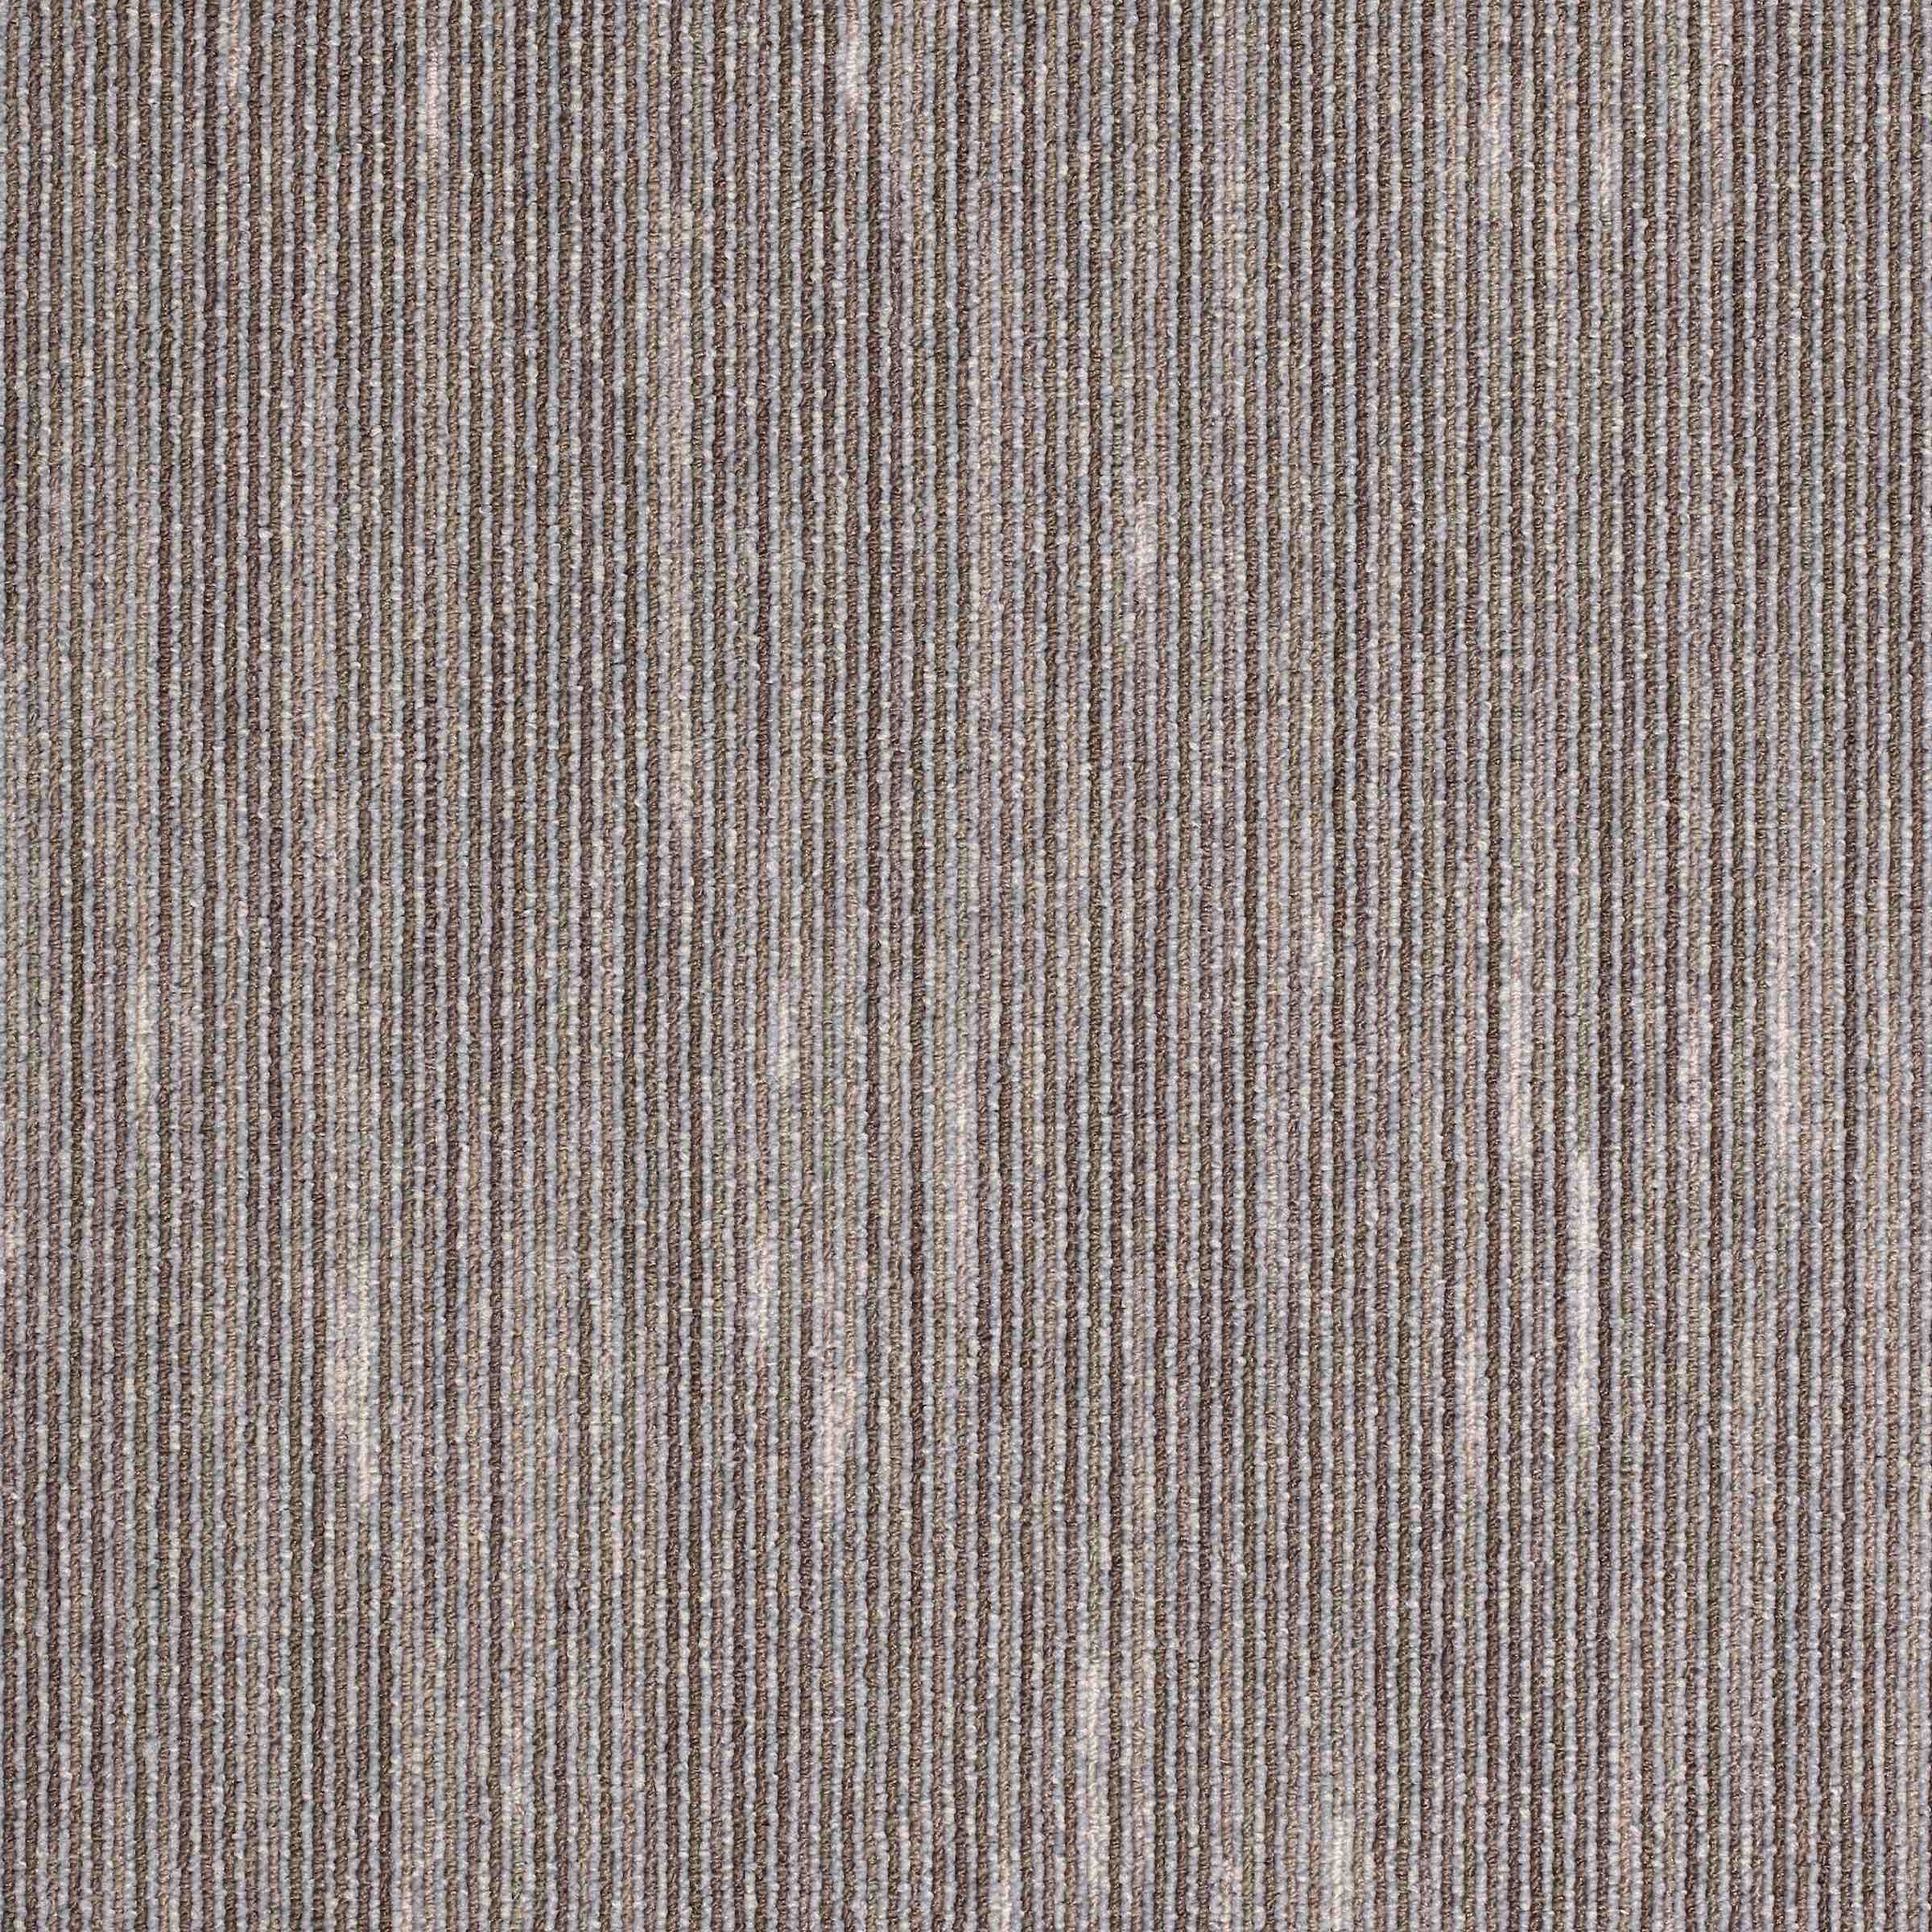 Paragon Workspace Linear Carpet Tiles